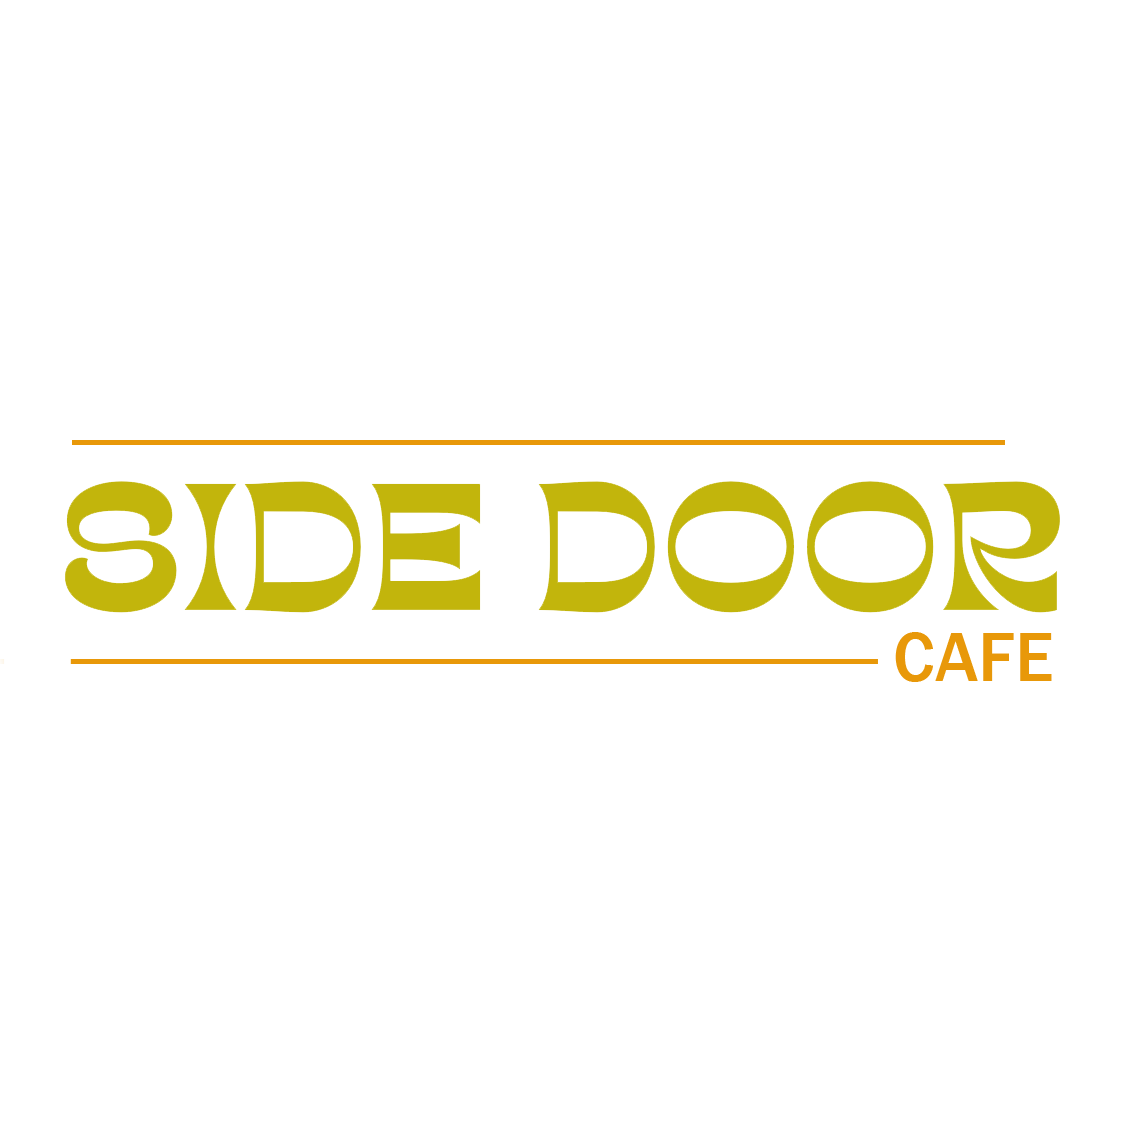 THE SIDE DOOR CAFE